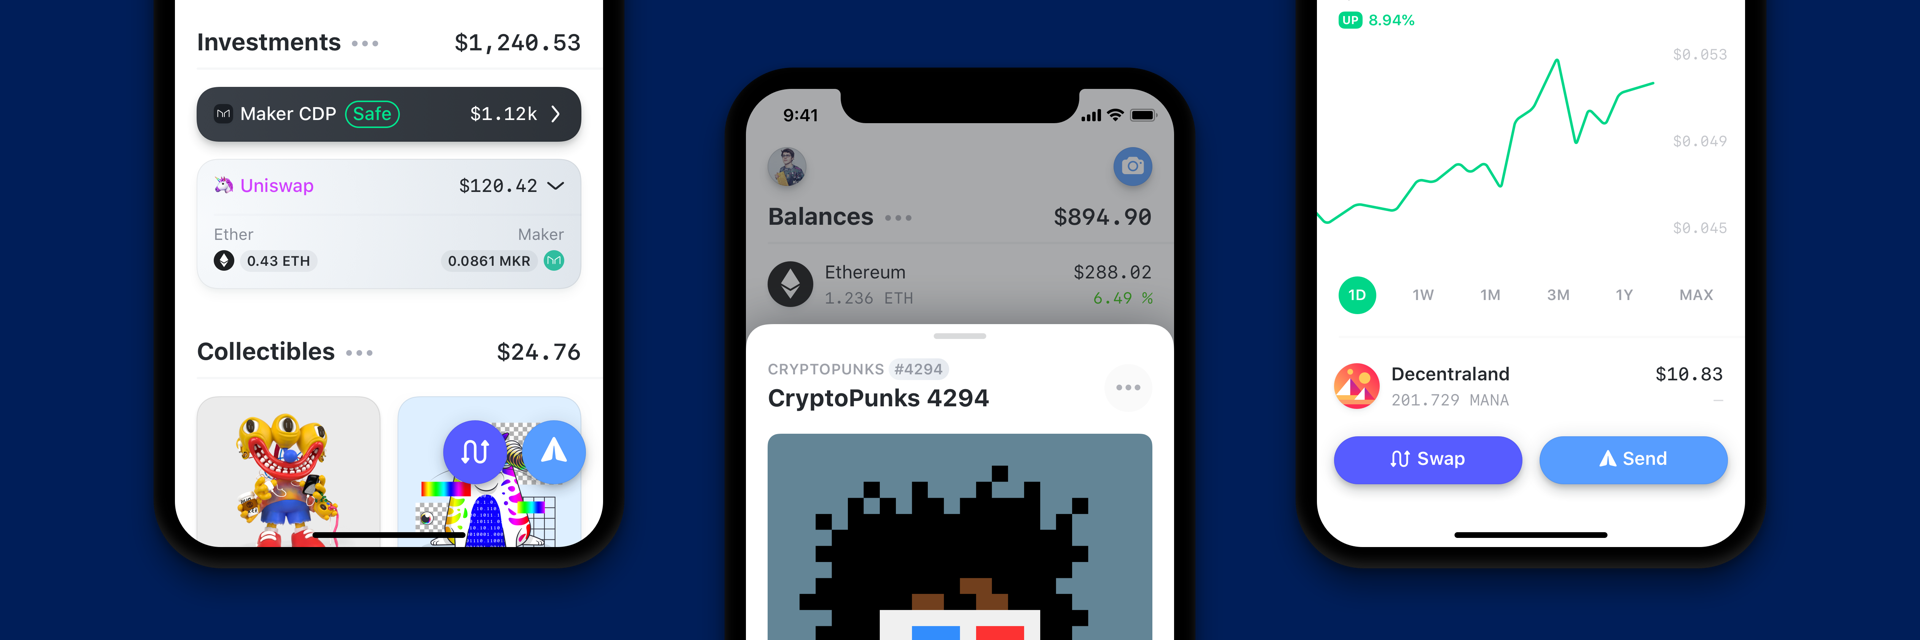 android-wallet · GitHub Topics · GitHub